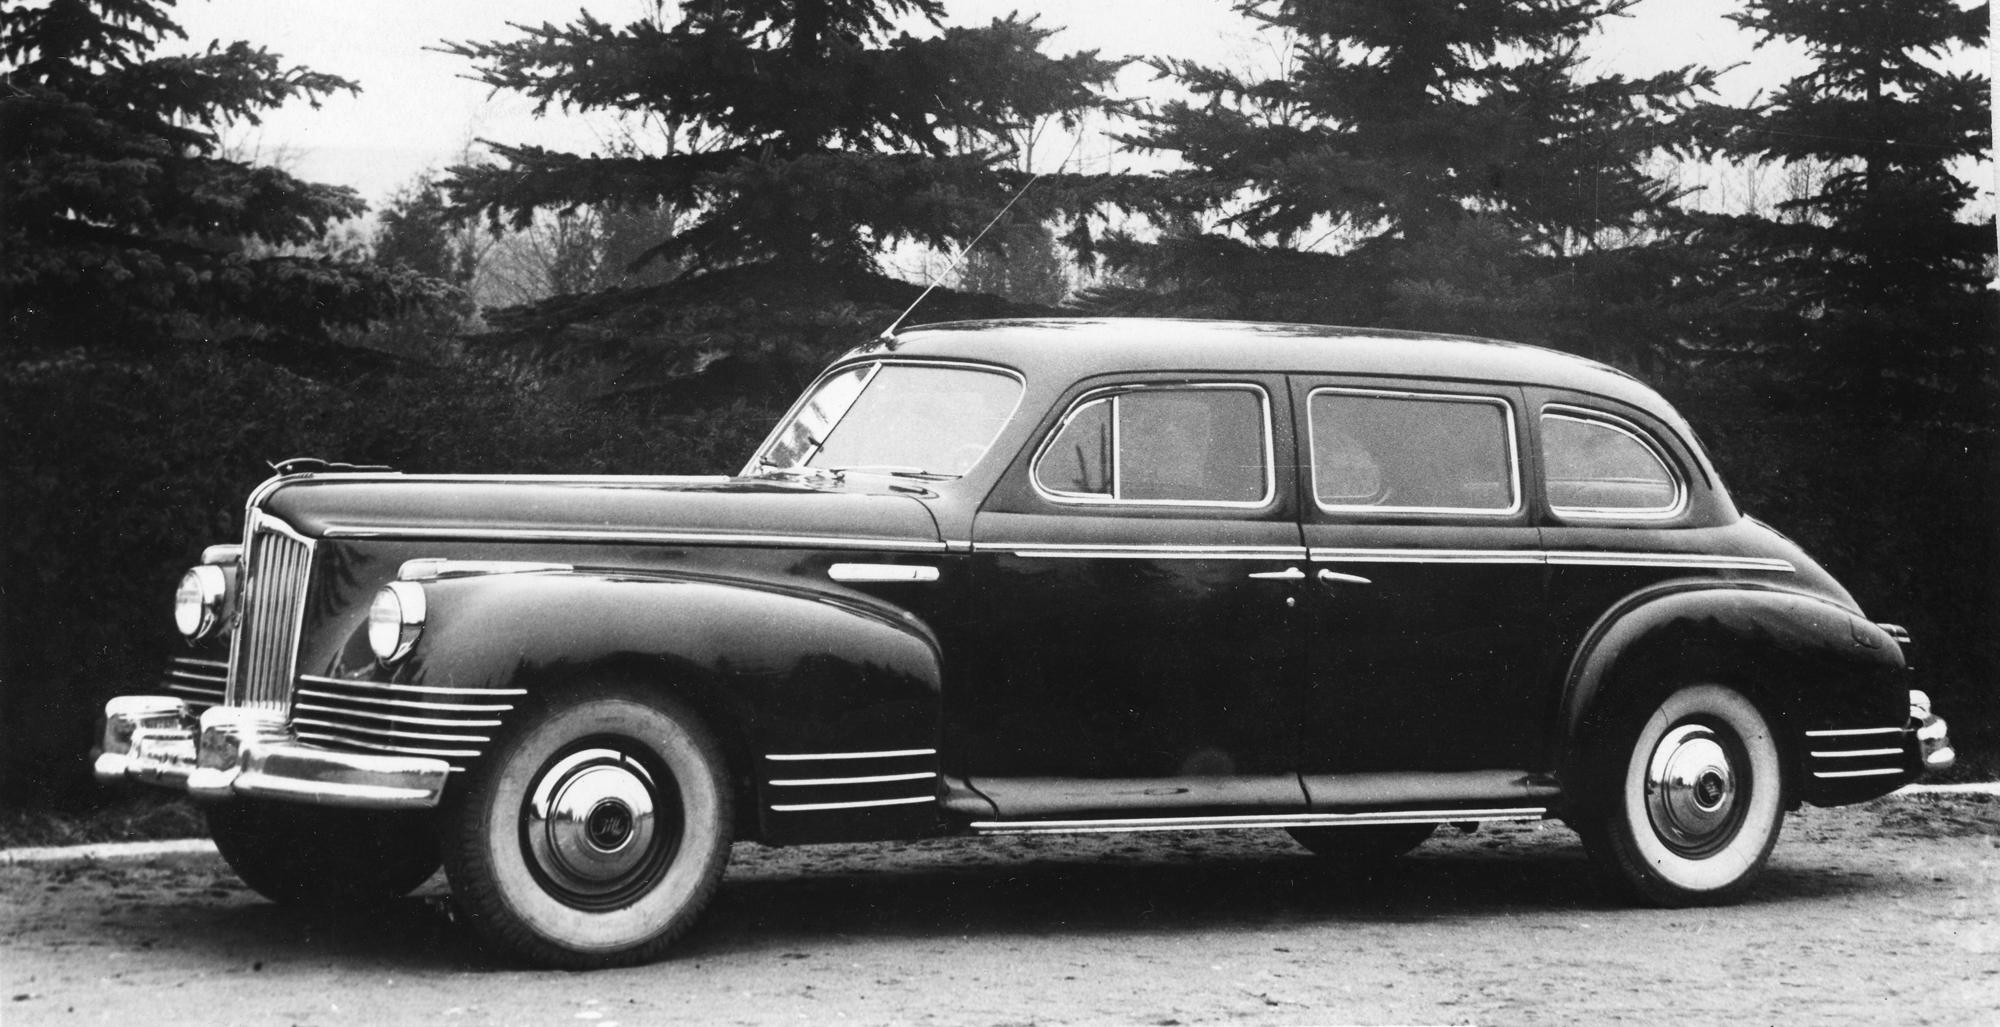 ЗИС-110 – послевоенная модель представительского автомобиля